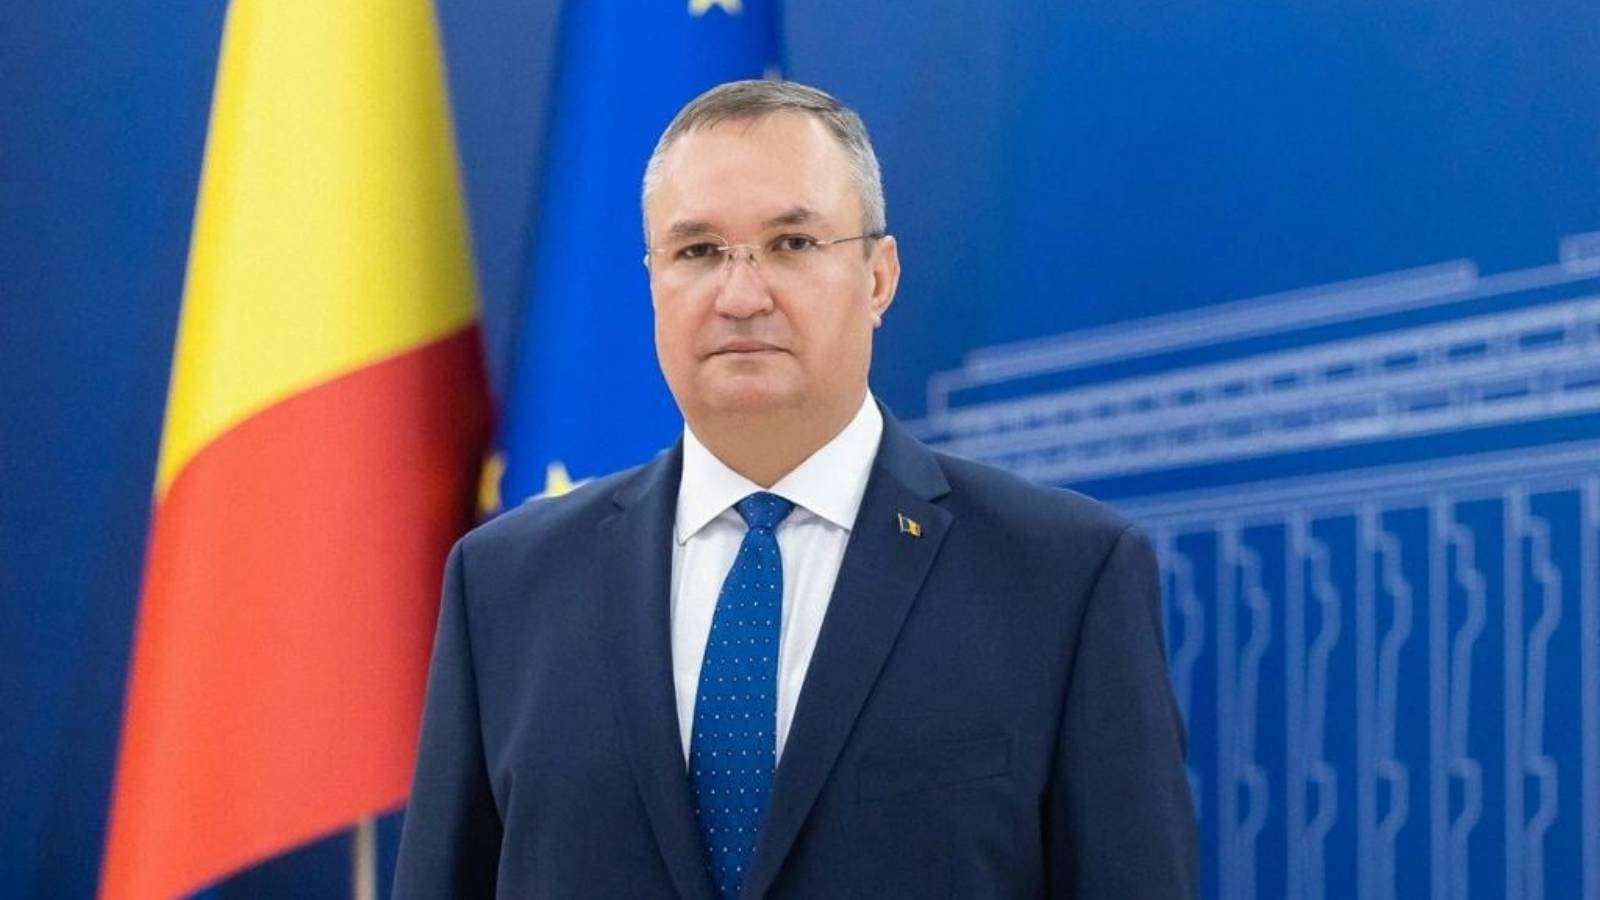 Nicolae Ciuca Roemenië heeft de mijlpalen van maart voor PNRR voltooid